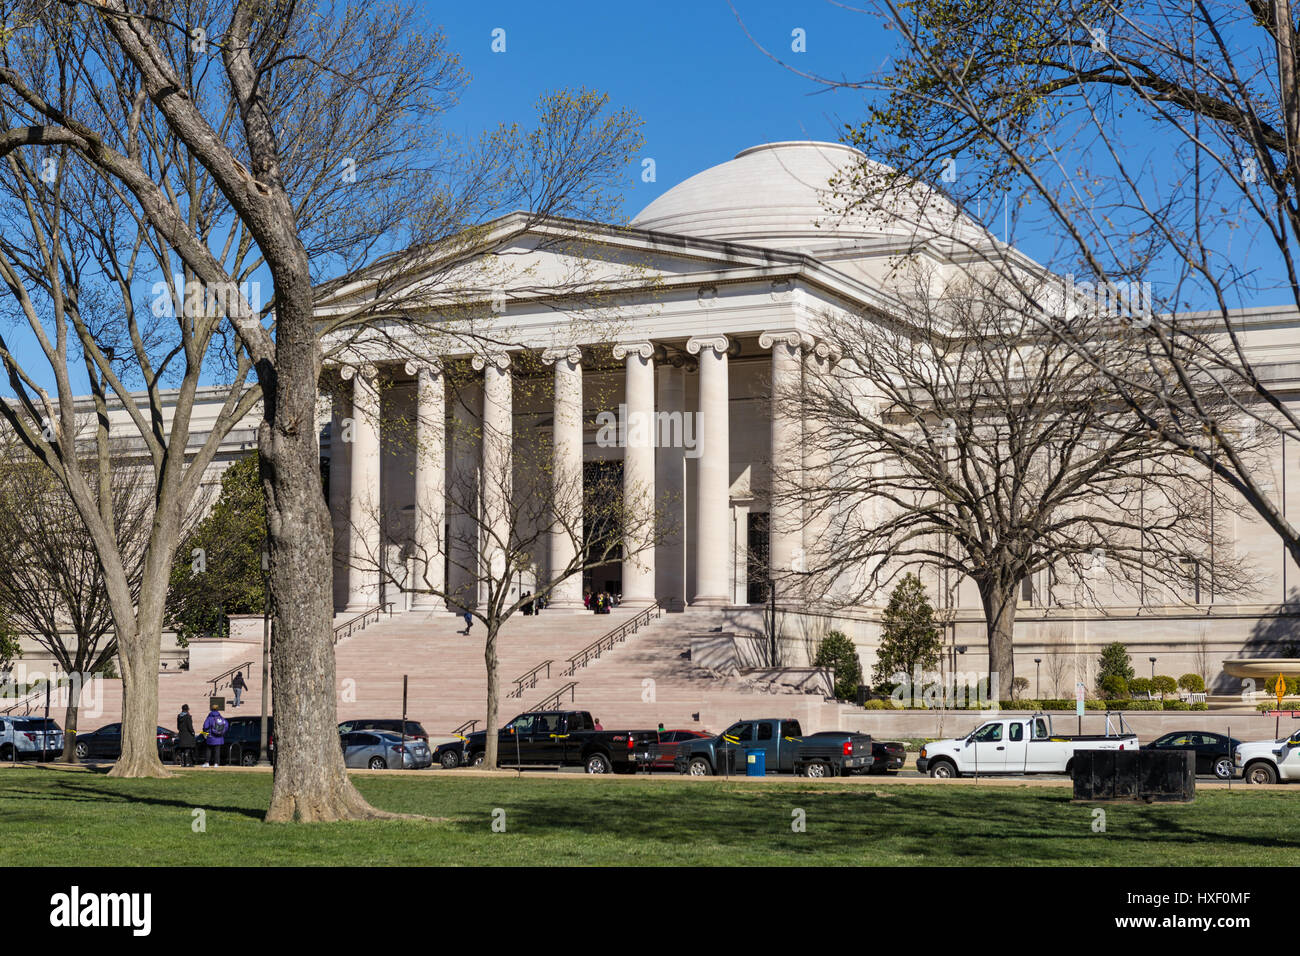 Ein Blick auf die neoklassizistische Gebäude westlich von der National Gallery of Art an der National Mall in Washington, DC. Stockfoto